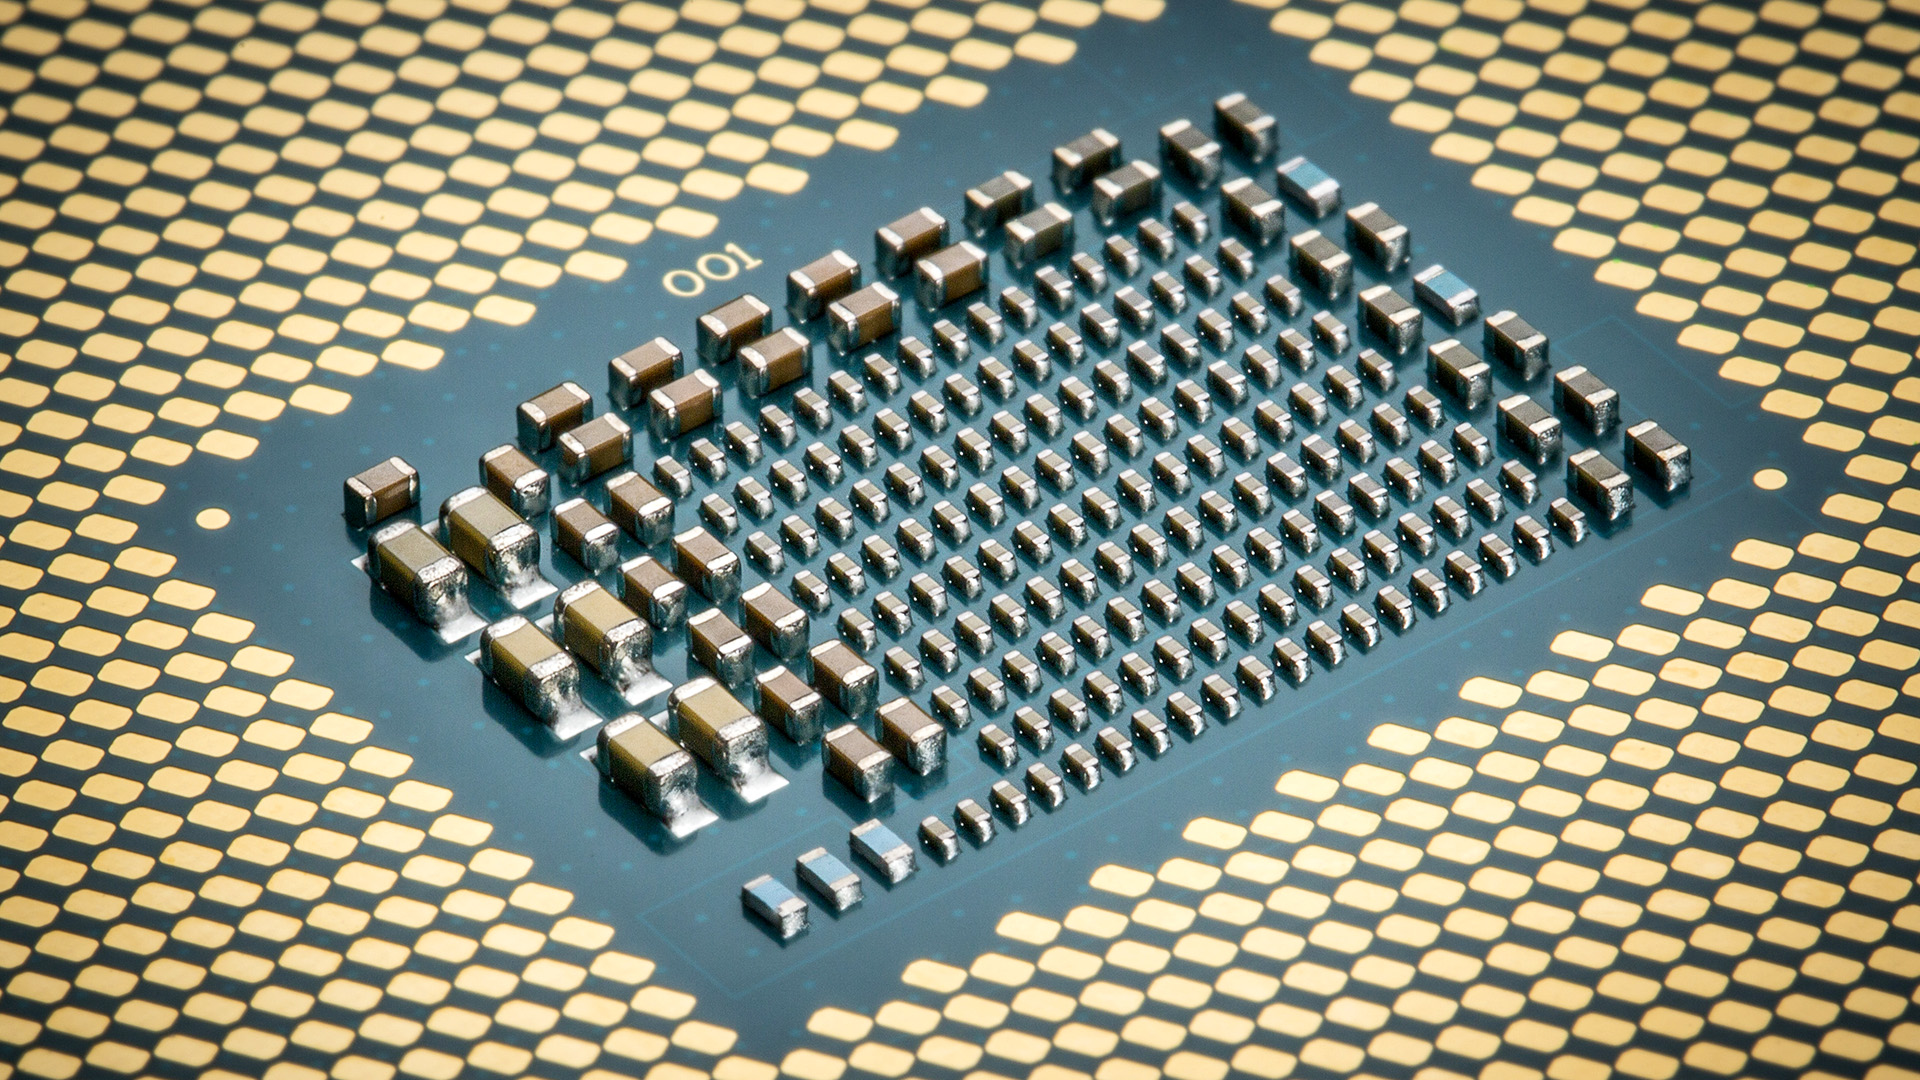 I-Intel Alder Lake flagship i9 12900K CPU esohlwini ngaphambi kokudalulwa ngemali engaphezu kuka-$1000